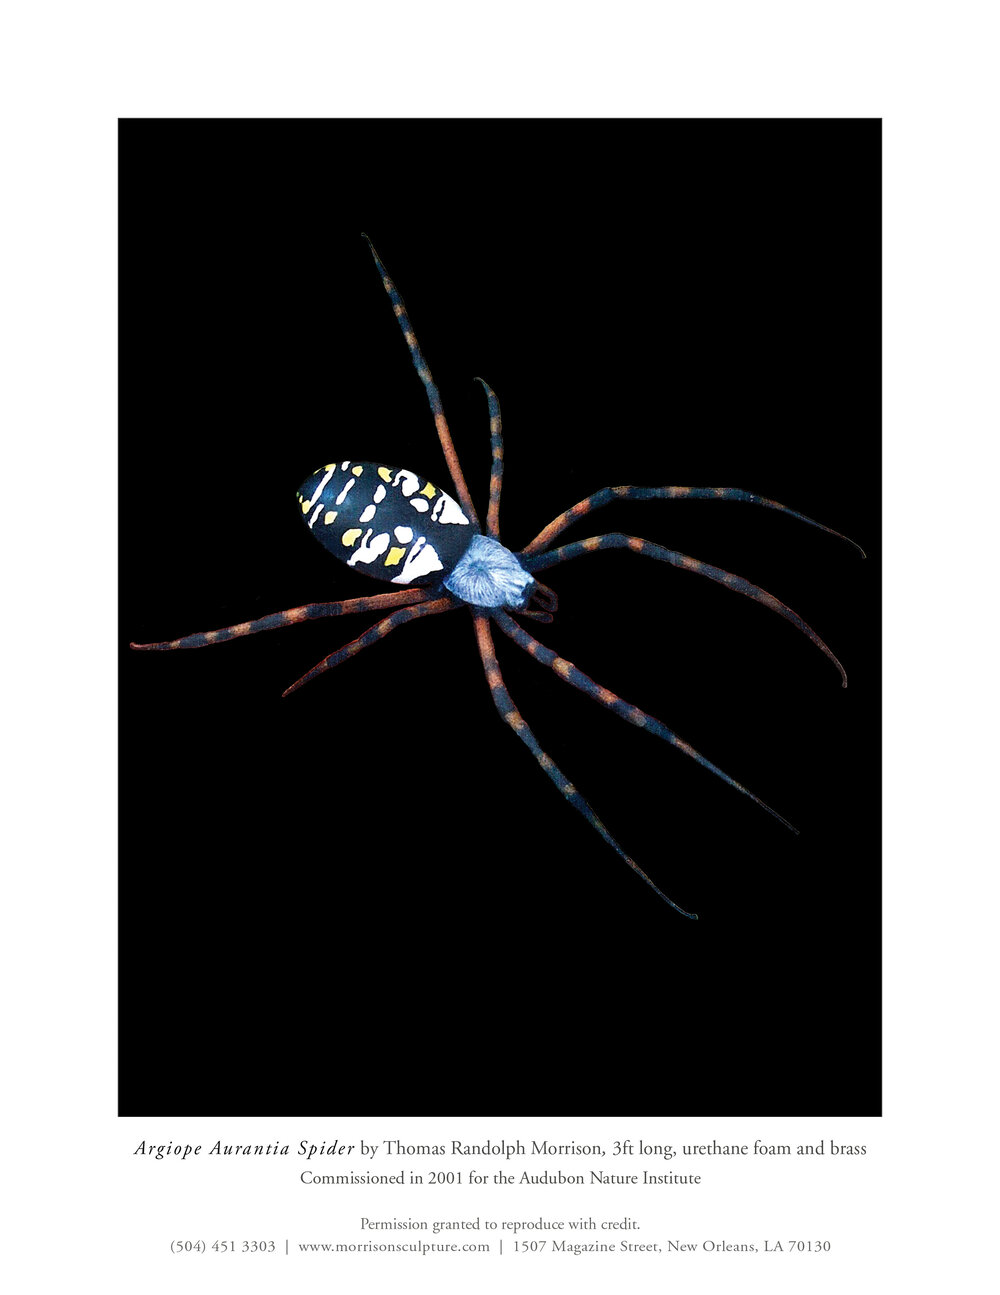 25.Argiope Aurantia Spider 3ft commission 2001.jpg